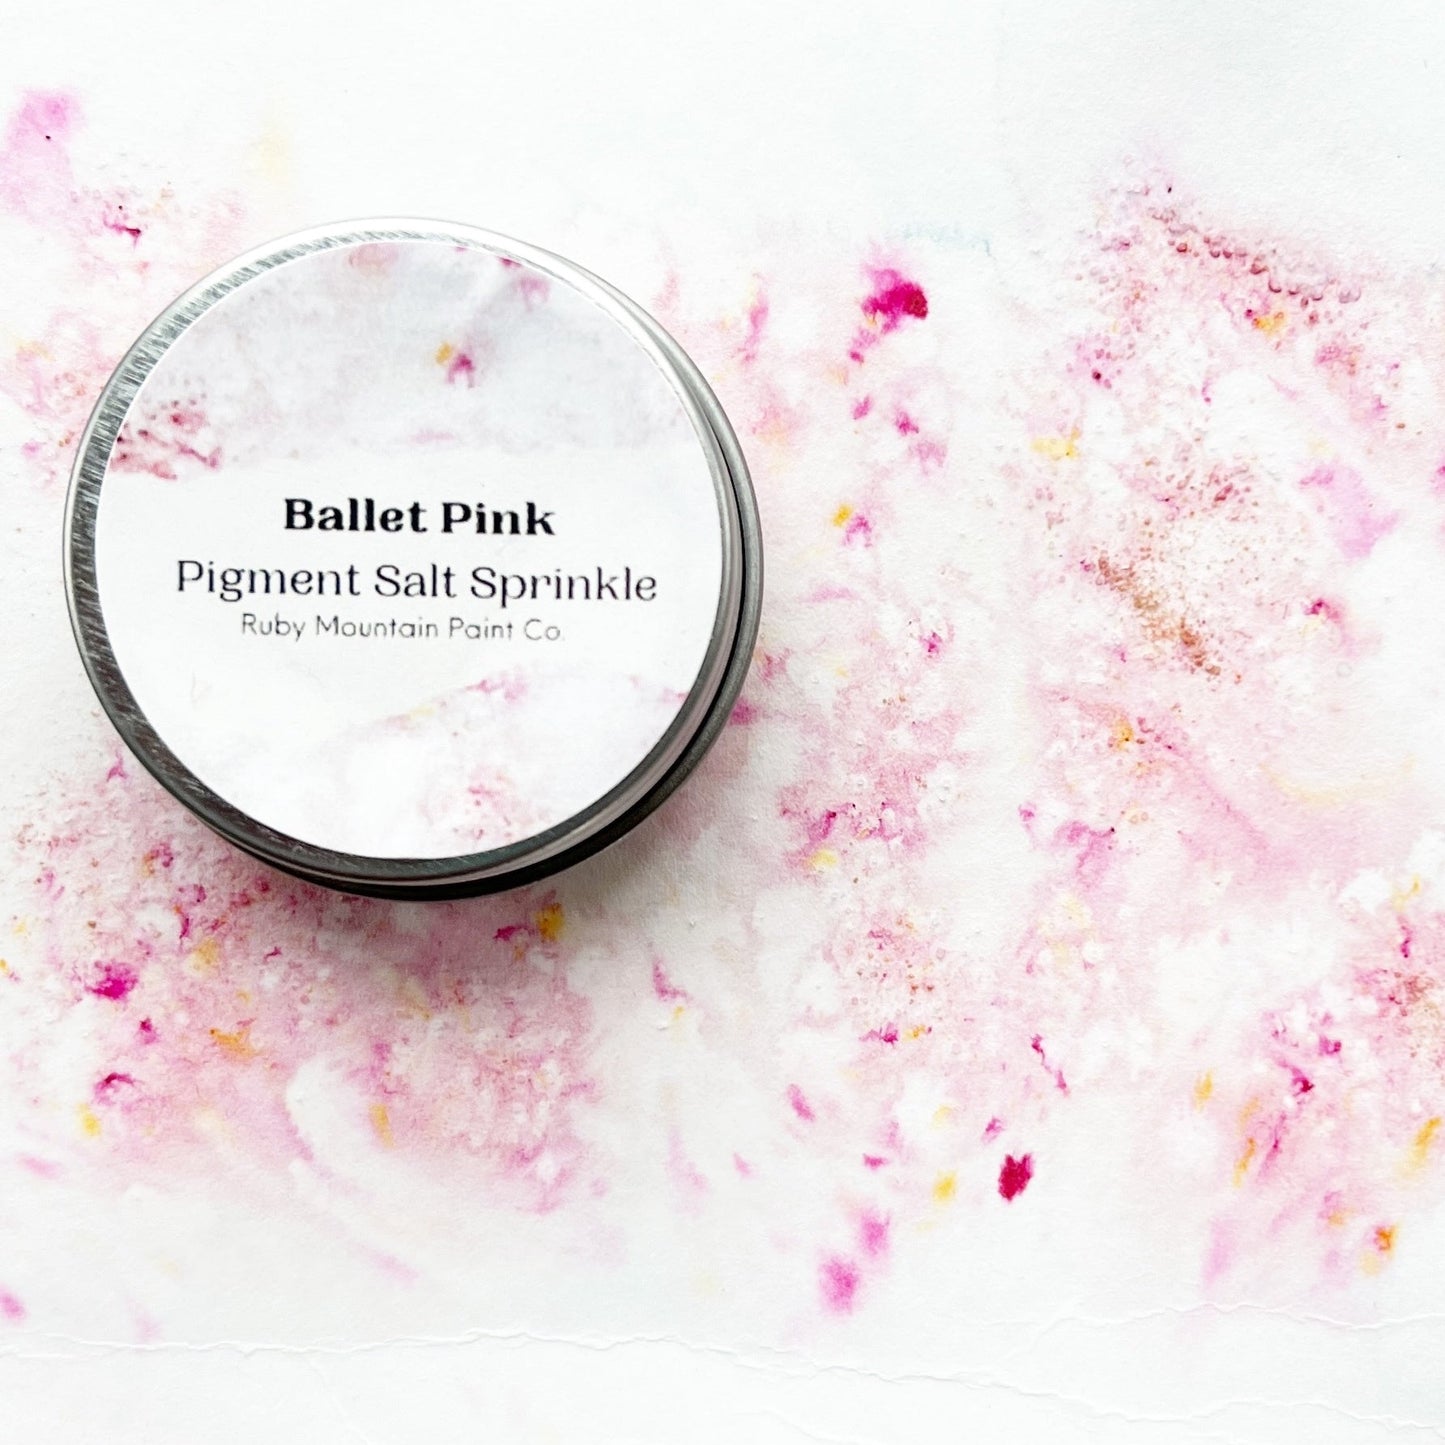 Ballet Pink Pigment Salt Sprinkle